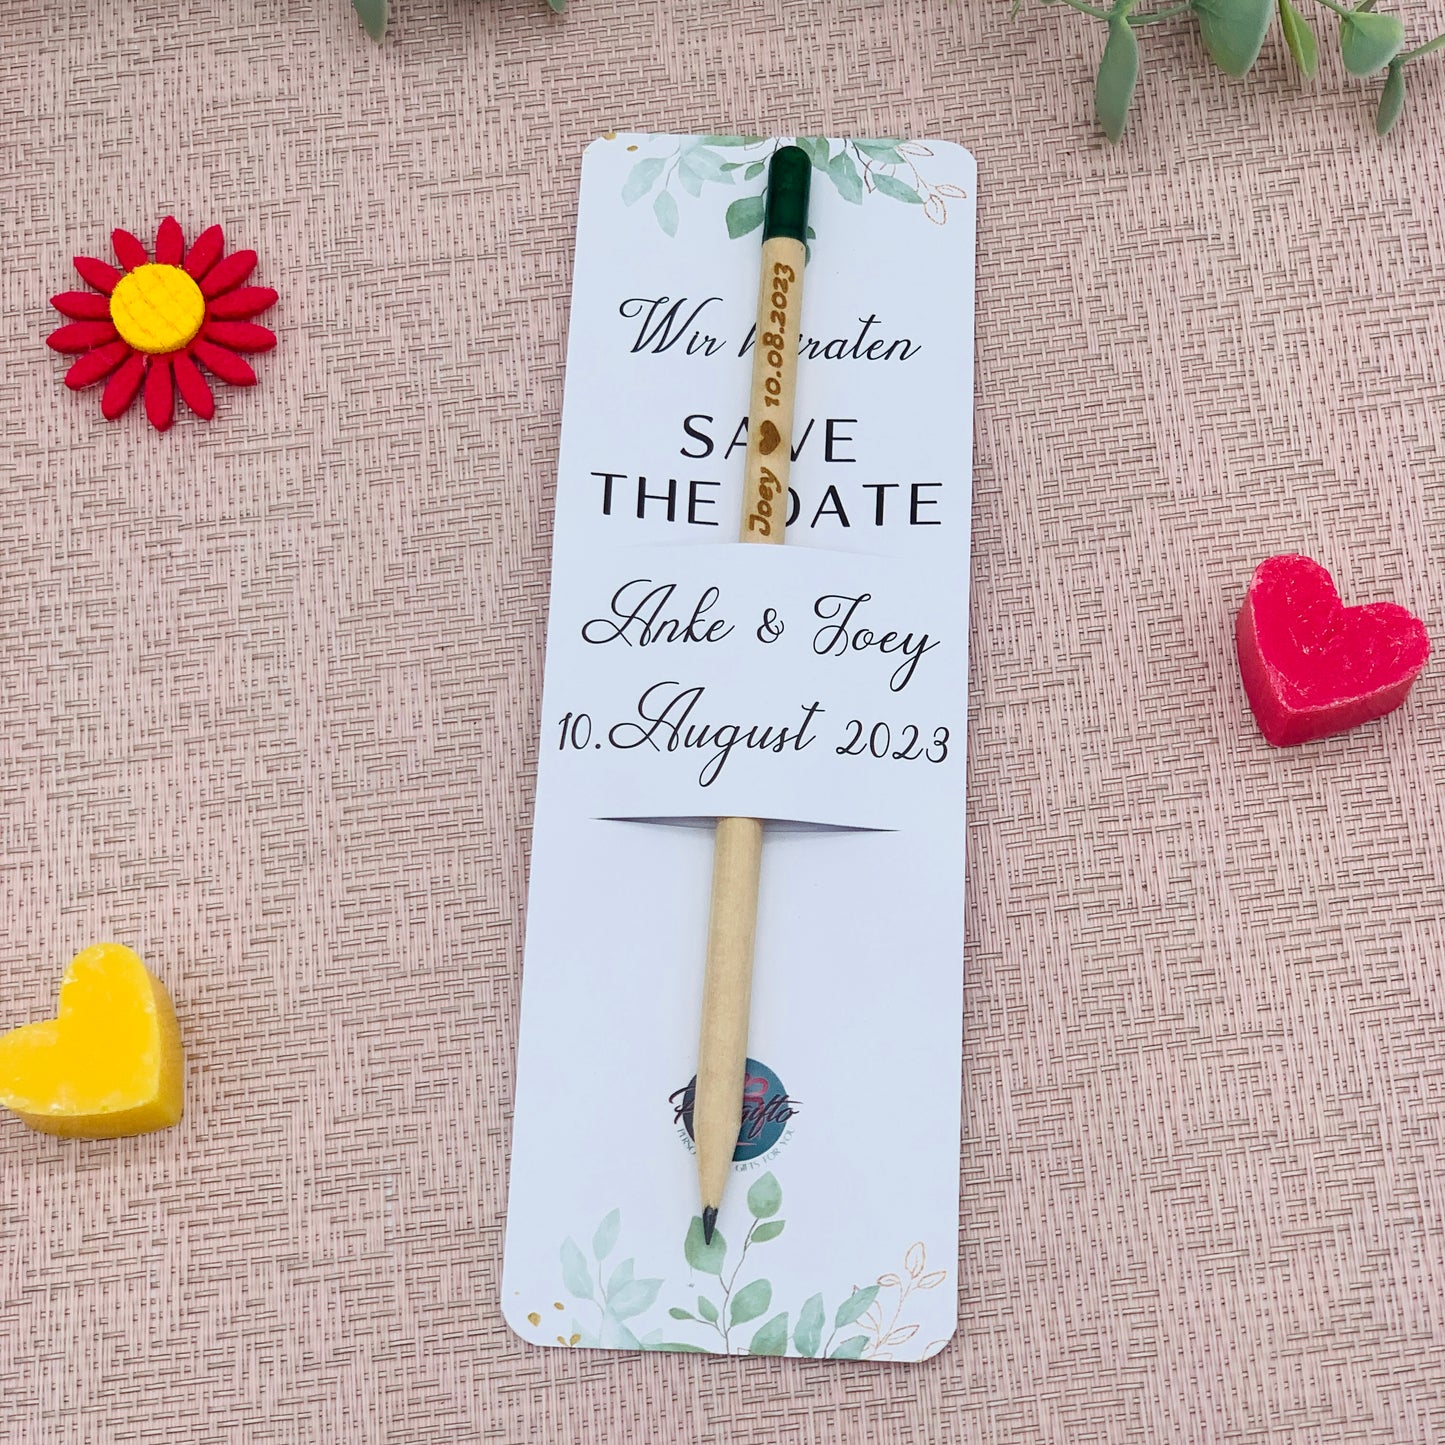 Hochzeit Bleistift zum Einpflanzen mit personalisierter Karte - Gastgeschenk Hochzeit - Save the date Hochzeitskarte - nachhaltiges Geschenk personalisiert